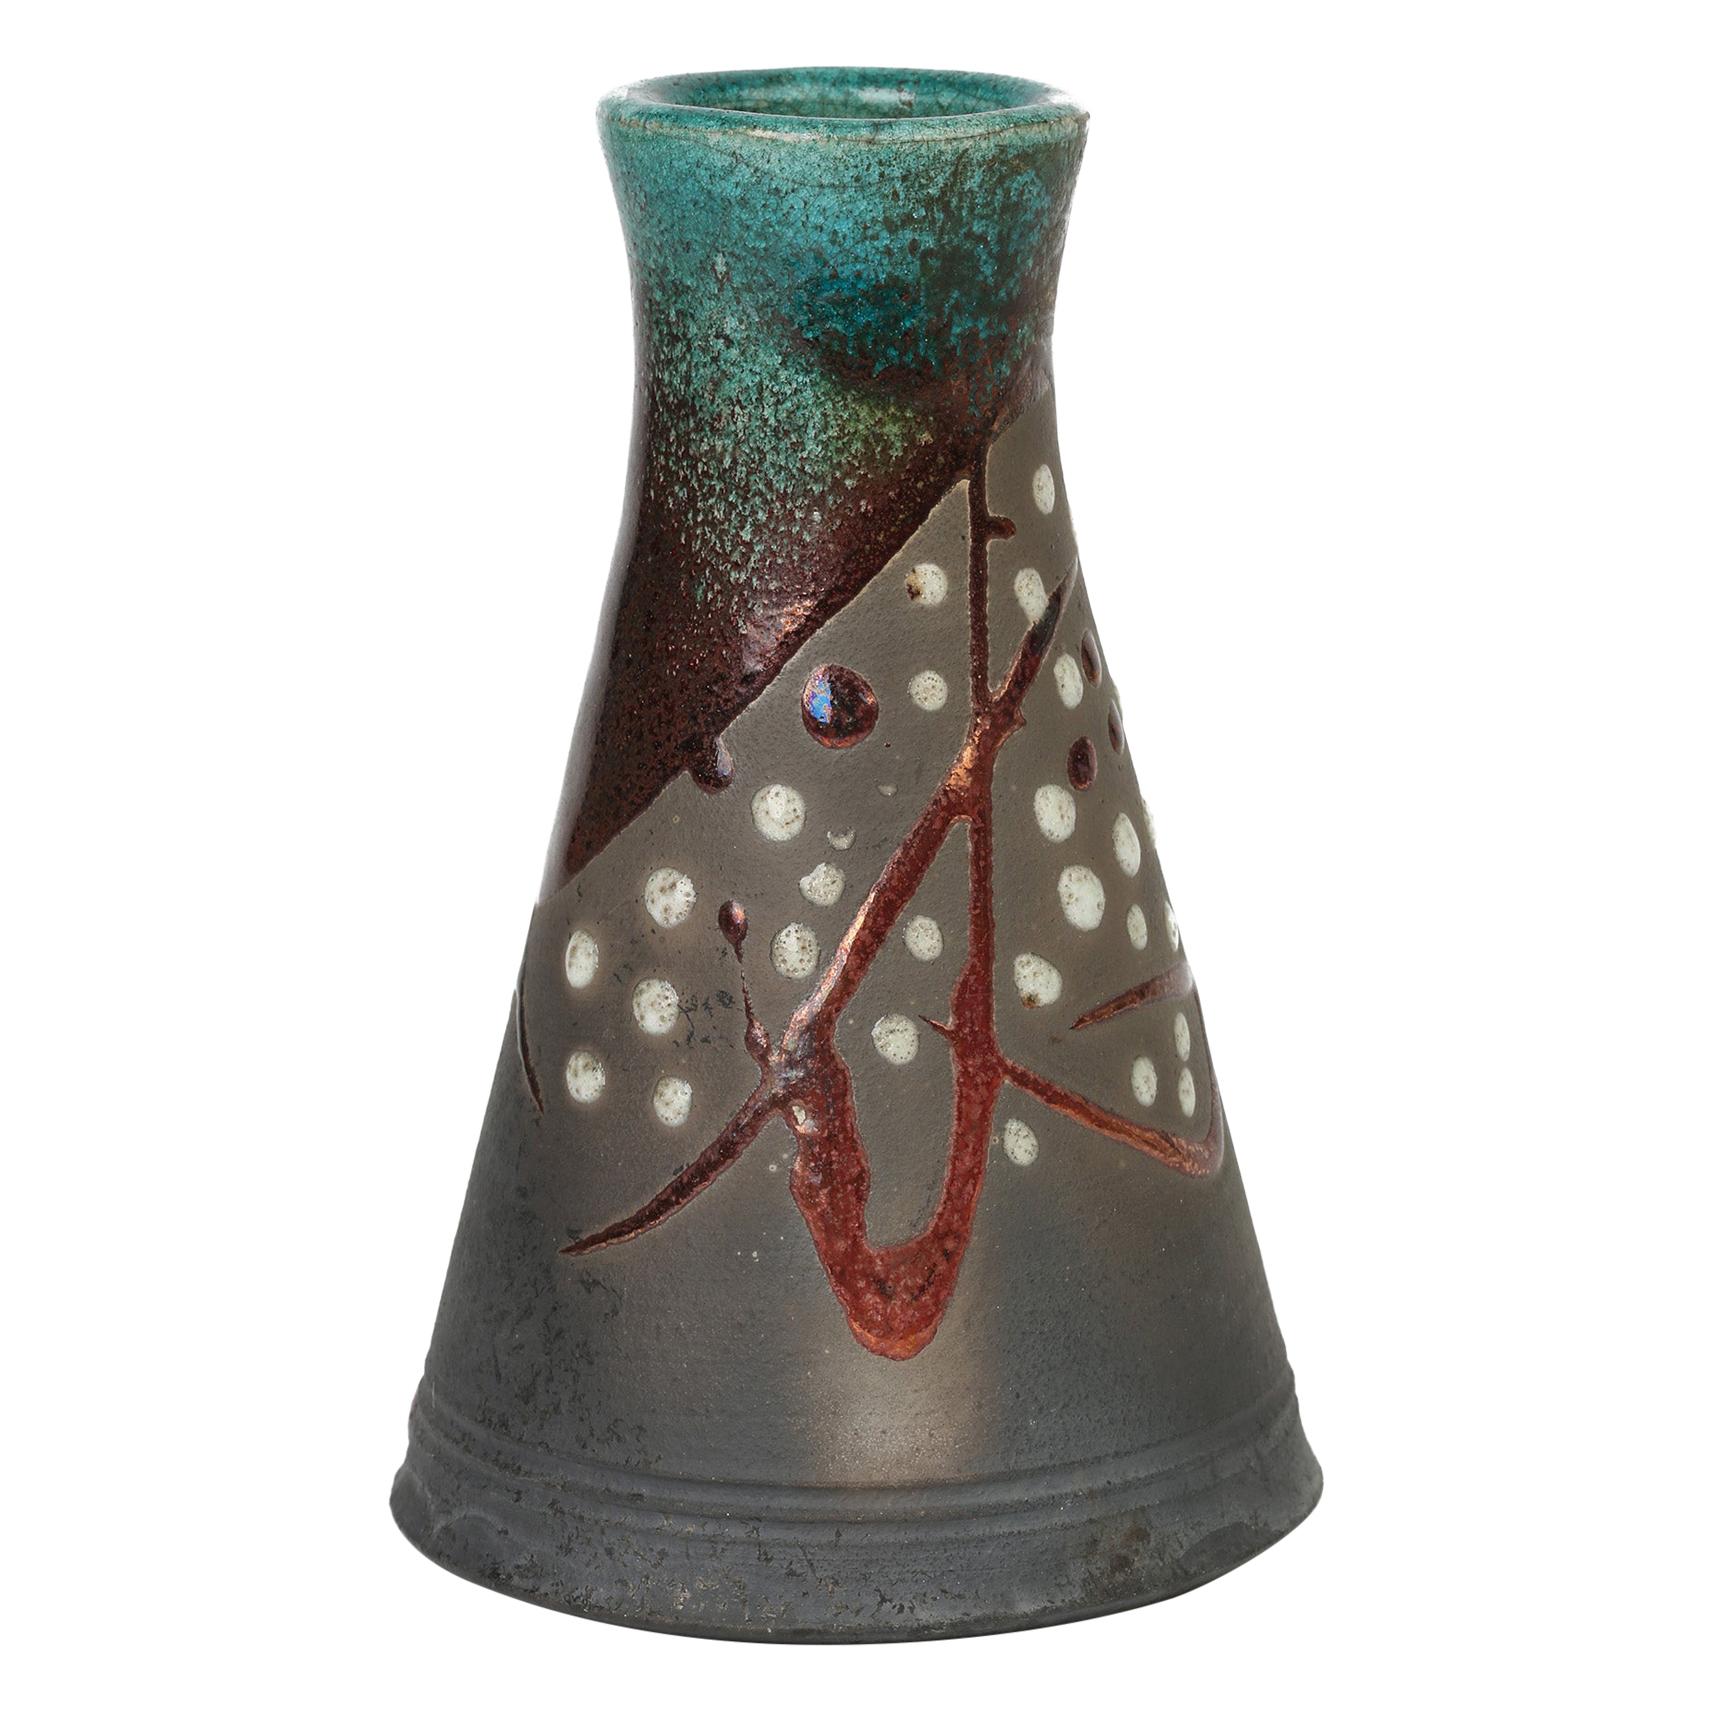 Elegante jarrón de cerámica Studio Pottery firmado con esmalte metálico Raku de forma cónica